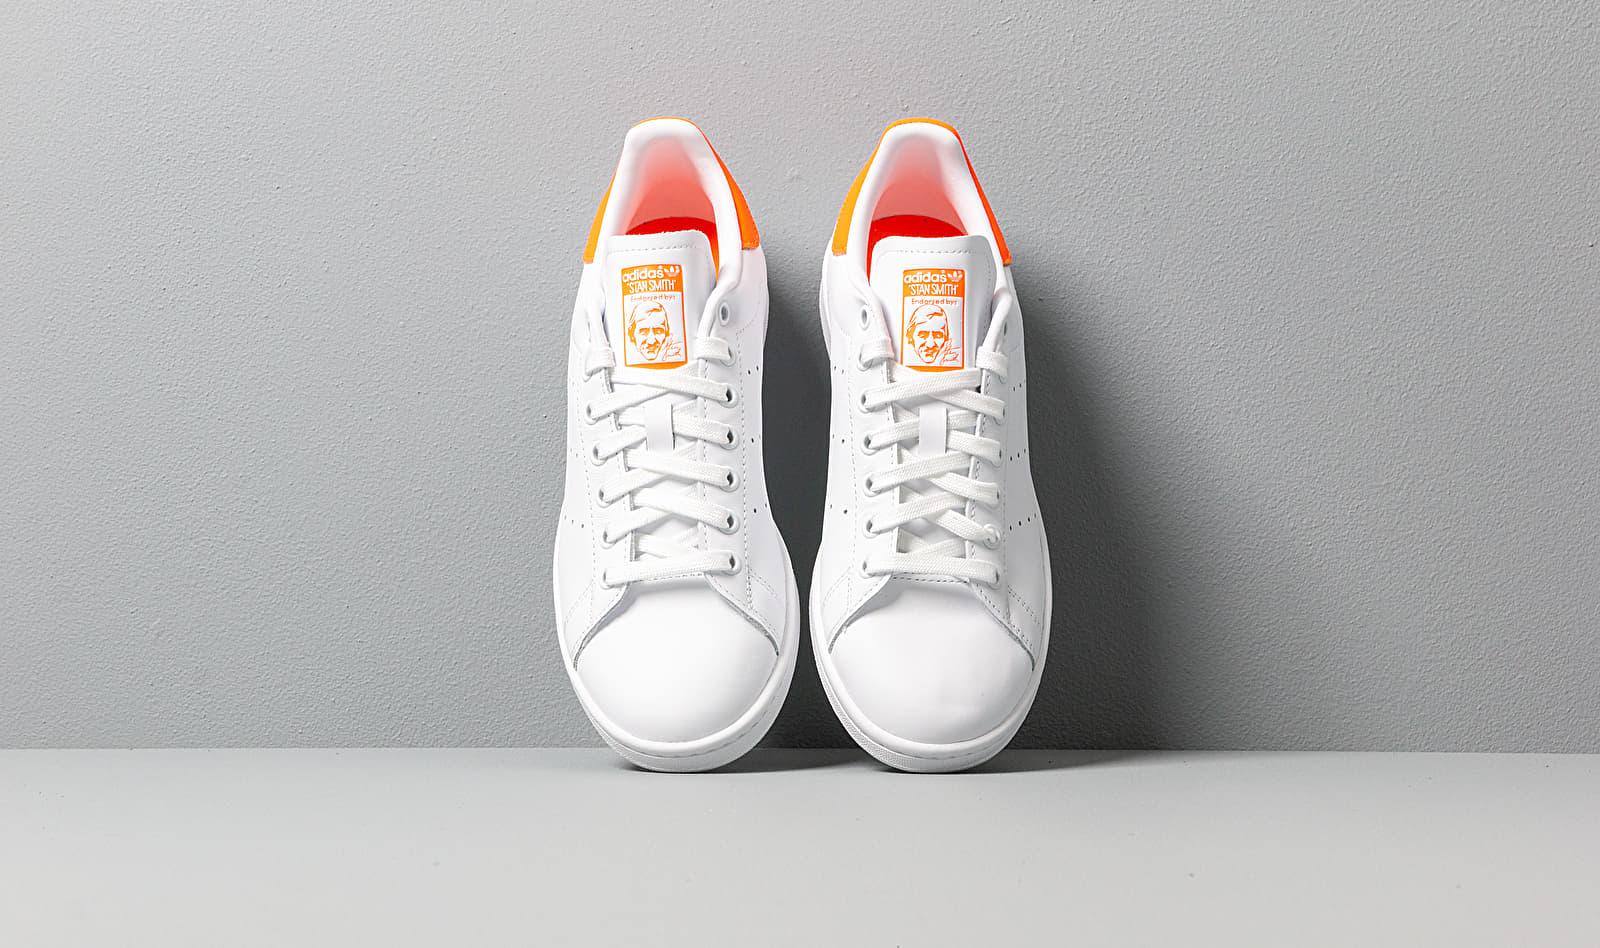 Vouwen Wens Hoofdstraat adidas Originals Adidas Stan Smith W Ftw White/ Solar Orange/ Ftw White |  Lyst